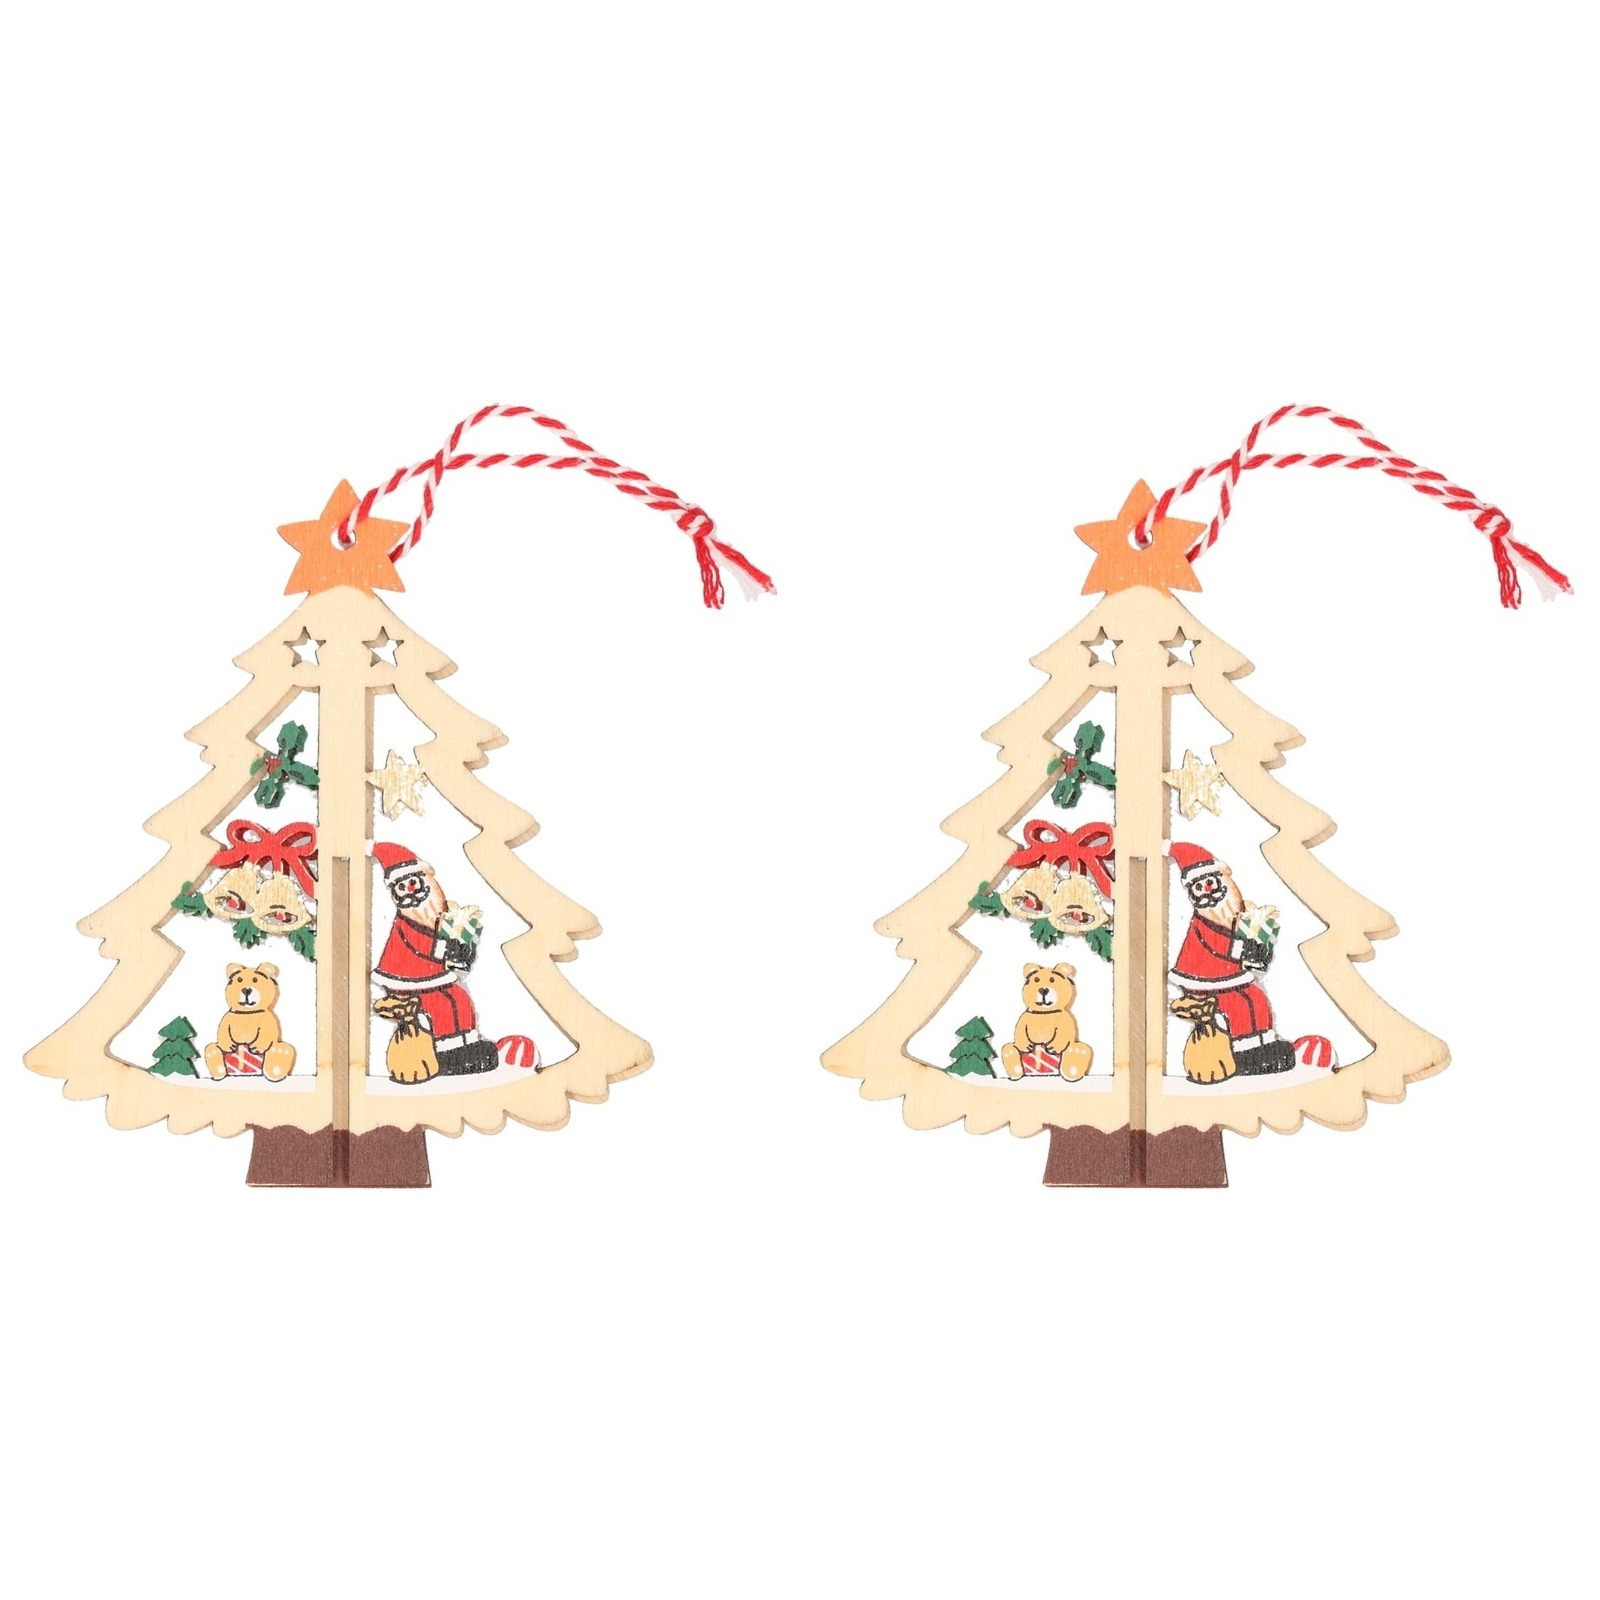 2x Houten bomen met kerstman kerstversiering hangdecoratie 10 cm